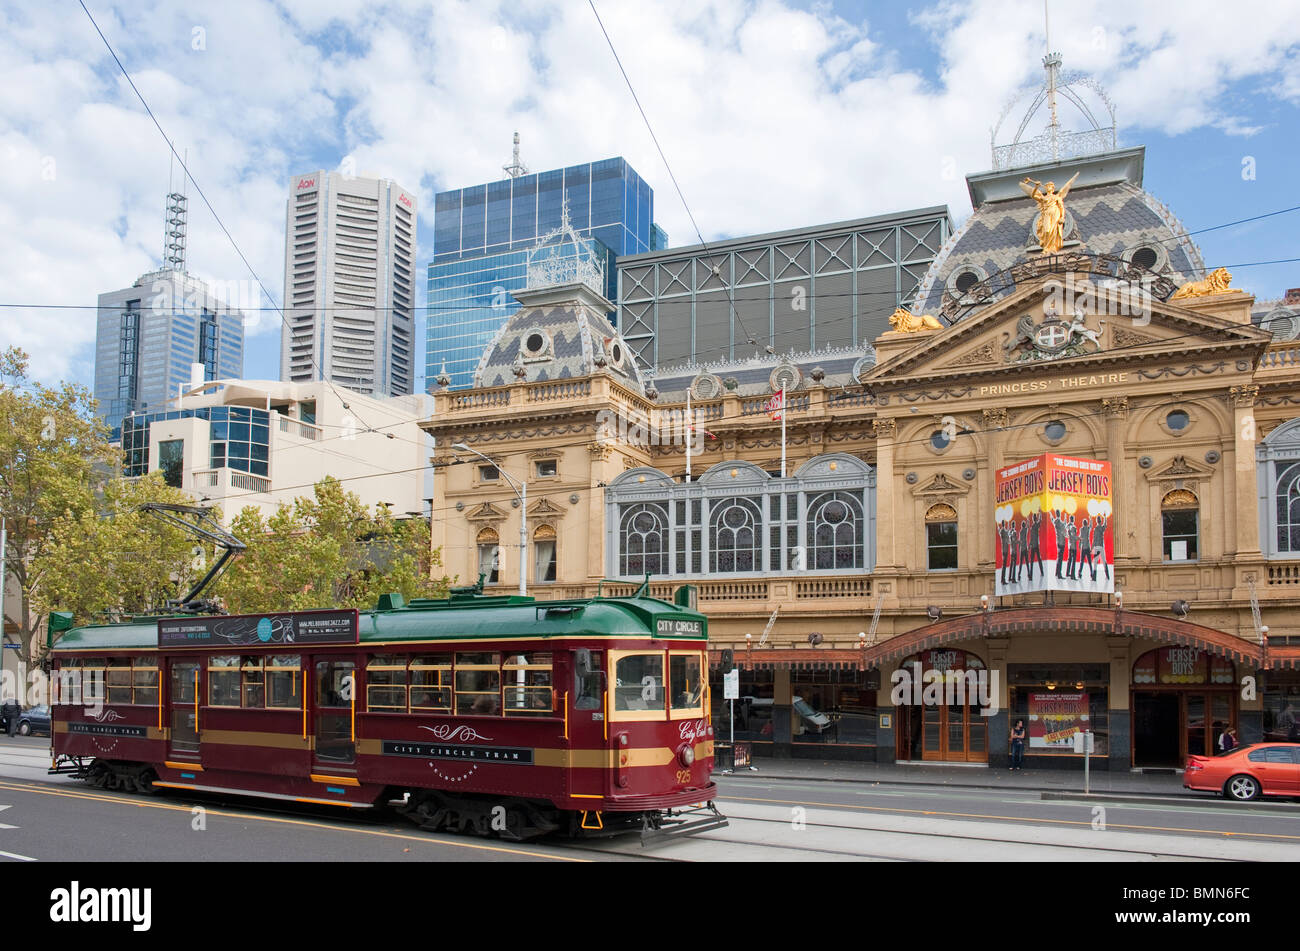 The Princess Theatre in Melbourne Stock Photo